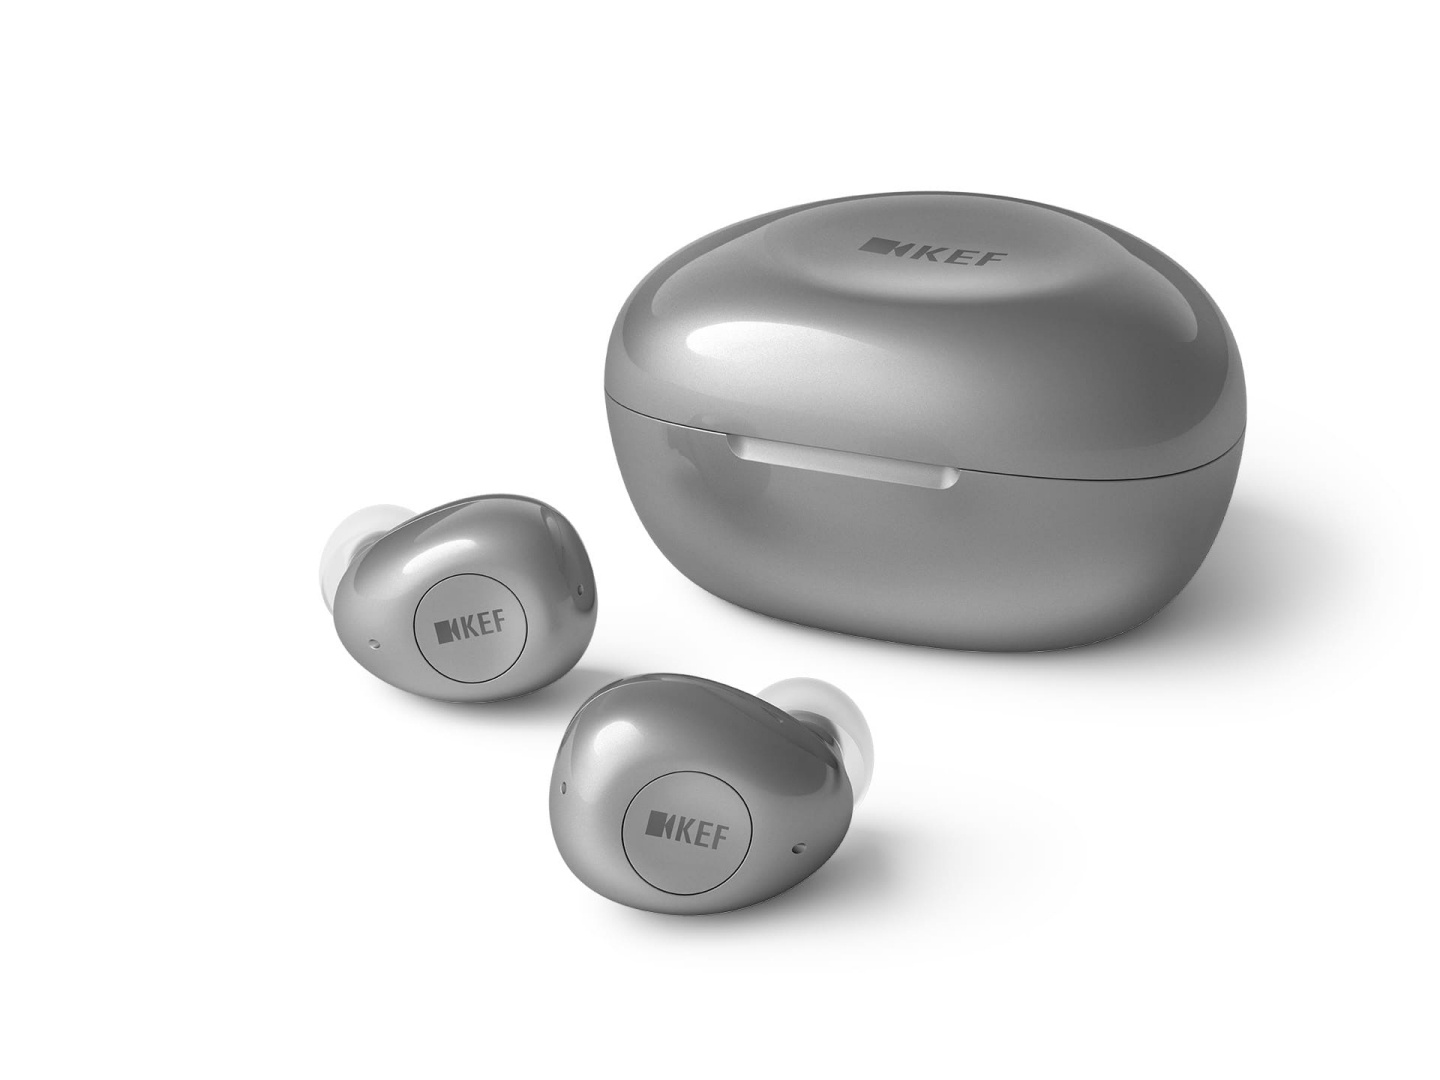 英國知名音響品牌 KEF 也推出首款真無線藍牙降噪耳機『 Mu3 』在台售價 6,799 台幣